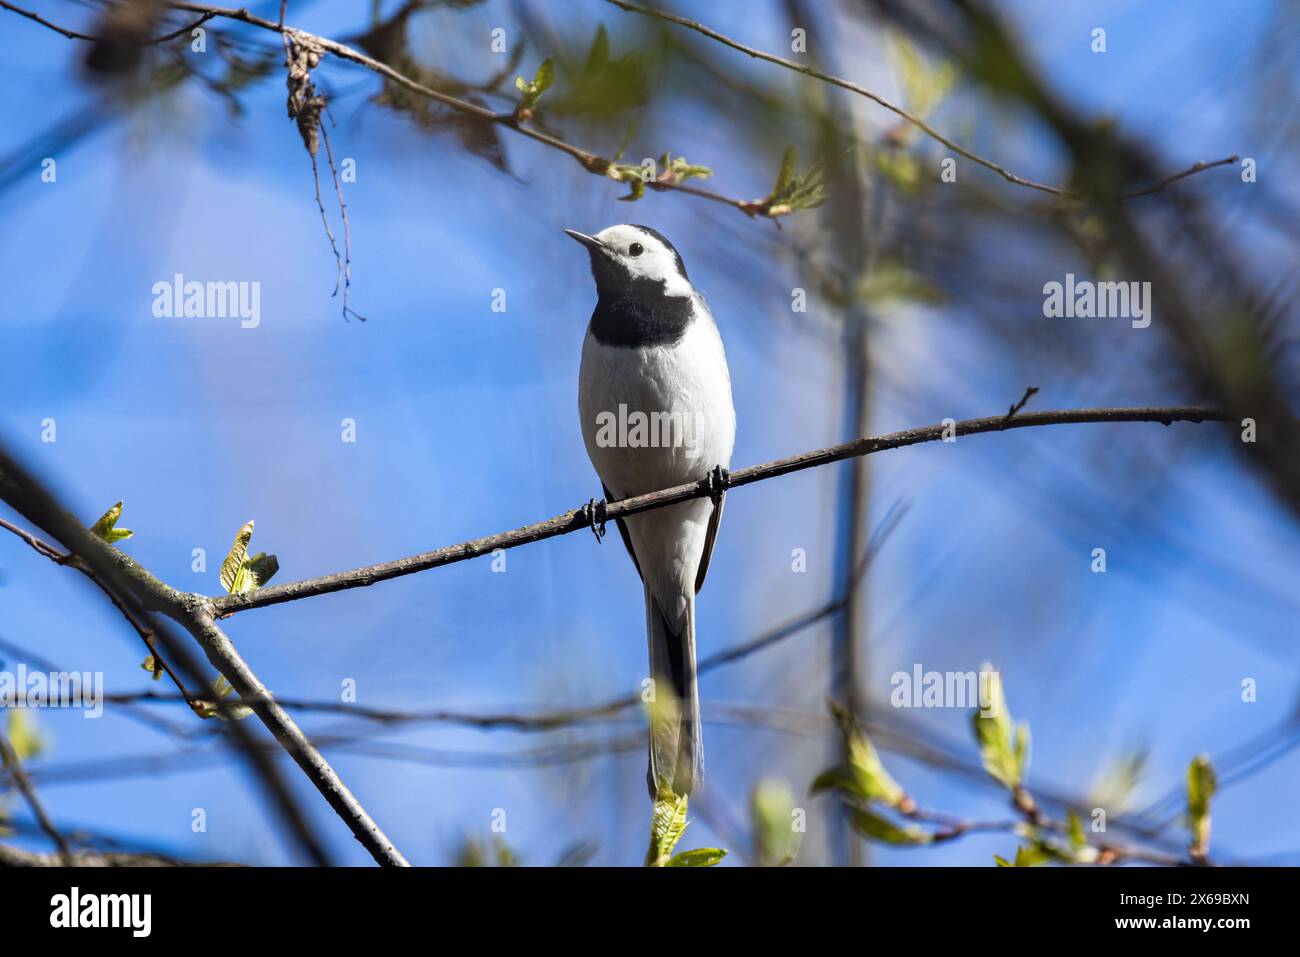 L'uccello si siede sul ramo dell'albero in un giorno di primavera di sole. La Motacilla alba è un piccolo uccello passerino della famiglia Motacillidae Foto Stock